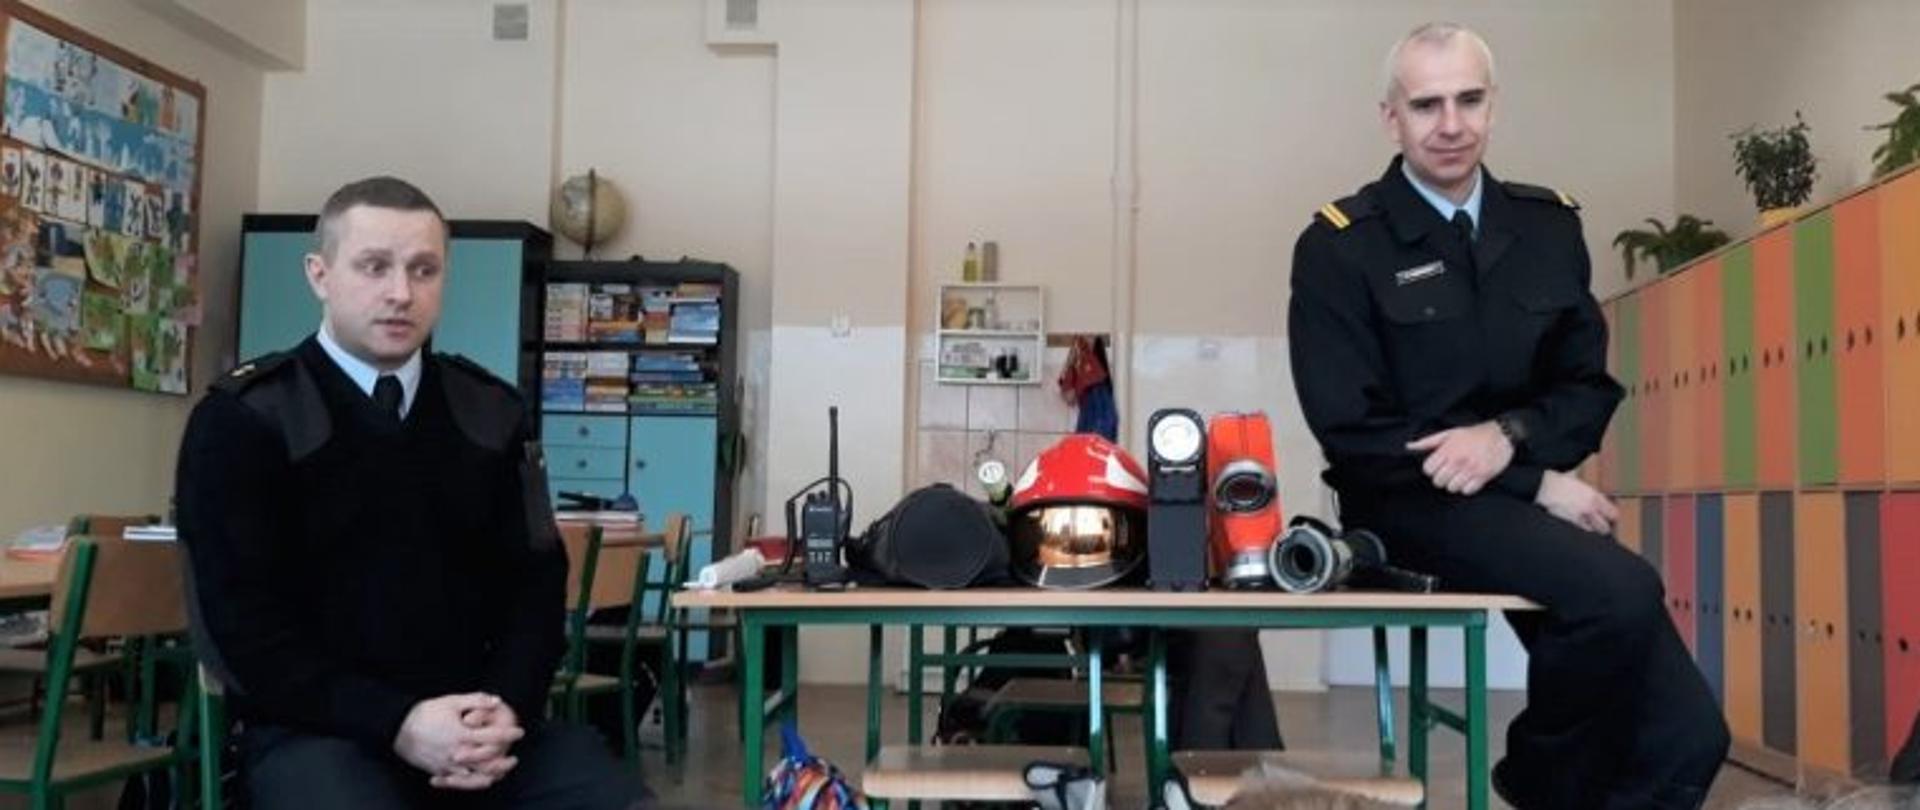 Strażacy komendy powiatowej PSP w umundurowaniu służbowym prezentują podstawowy sprzęt z wyposażenia strażaka między innymi obuwie, hełm, wąż, prądownice i sprzęt łączności. Poniżej widać siedzące i słuchające dzieci. Wydarzenie ma miejsce w klasie szkolnej.